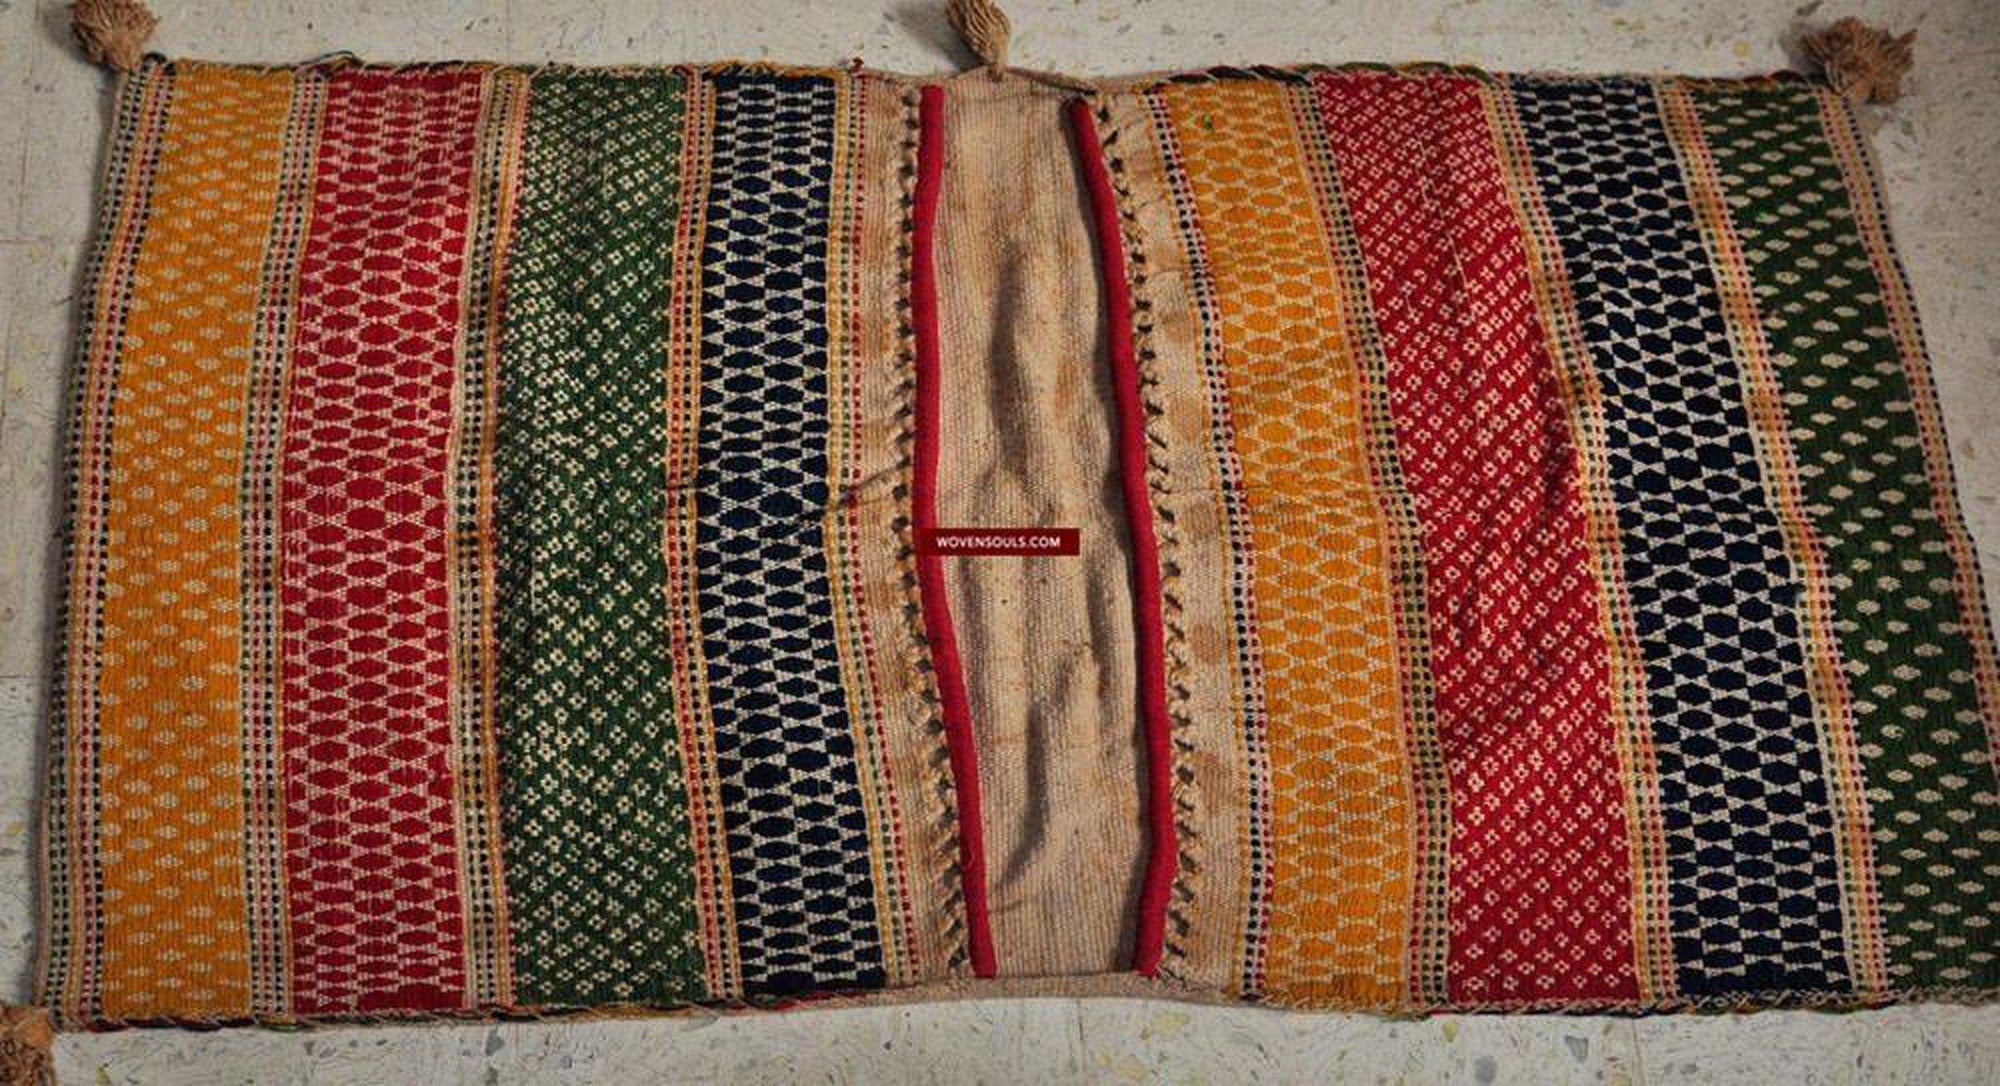 153 SOLD Antique Woven Saddle Bag-WOVENSOULS-Antique-Vintage-Textiles-Art-Decor